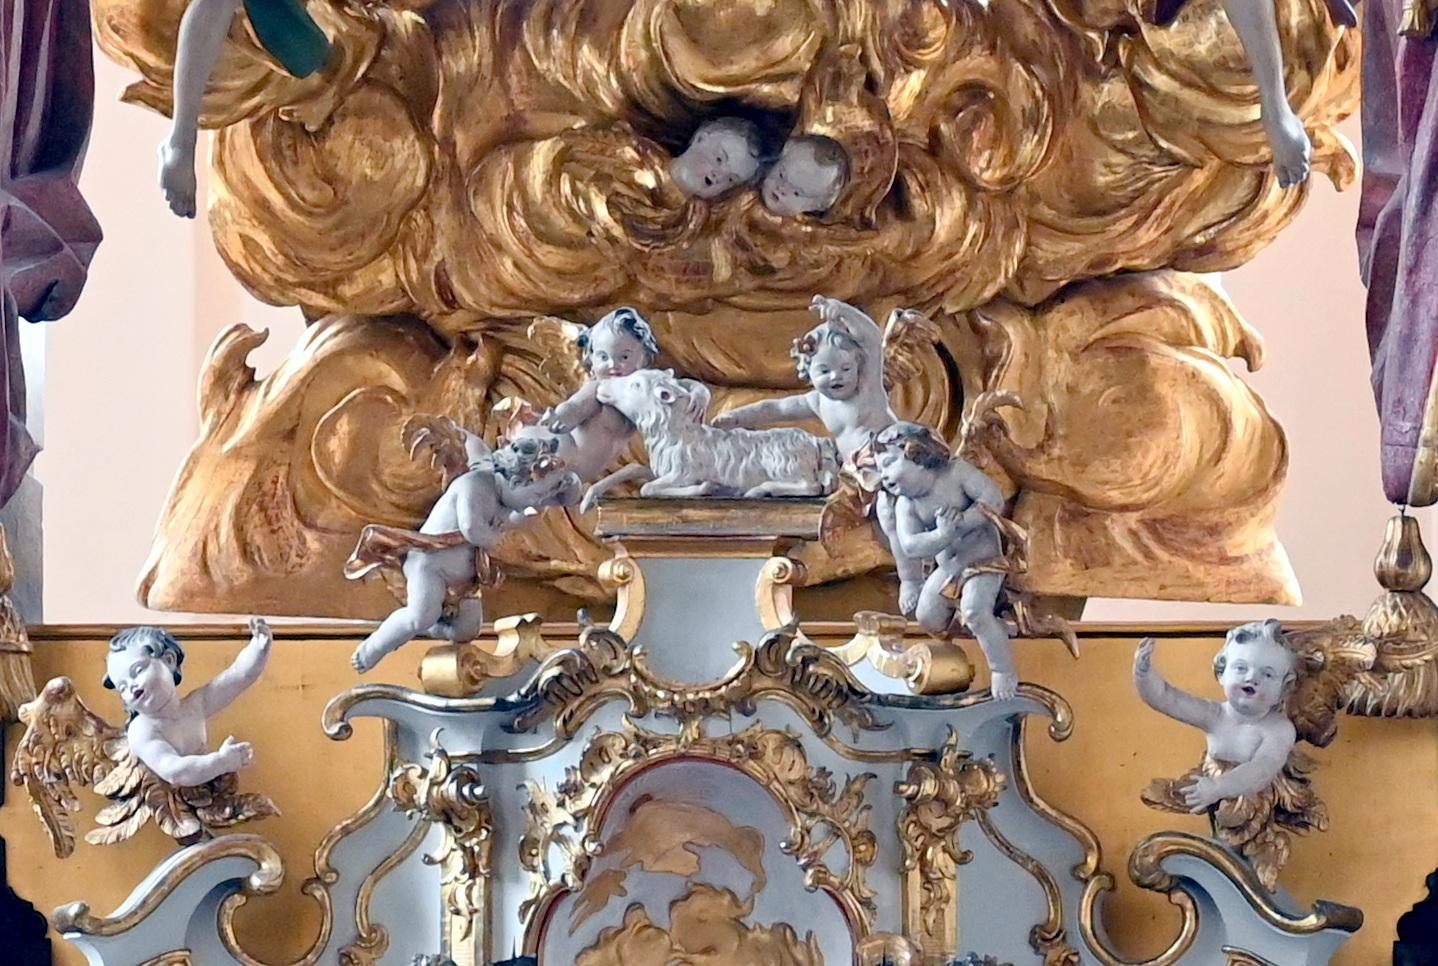 Christian Jorhan der Ältere (1750–1802), Lamm Gottes mit Puttengruppe für den Hochaltartabernakel, Maria Thalheim, Wallfahrtskirche Maria Thalheim, 1765